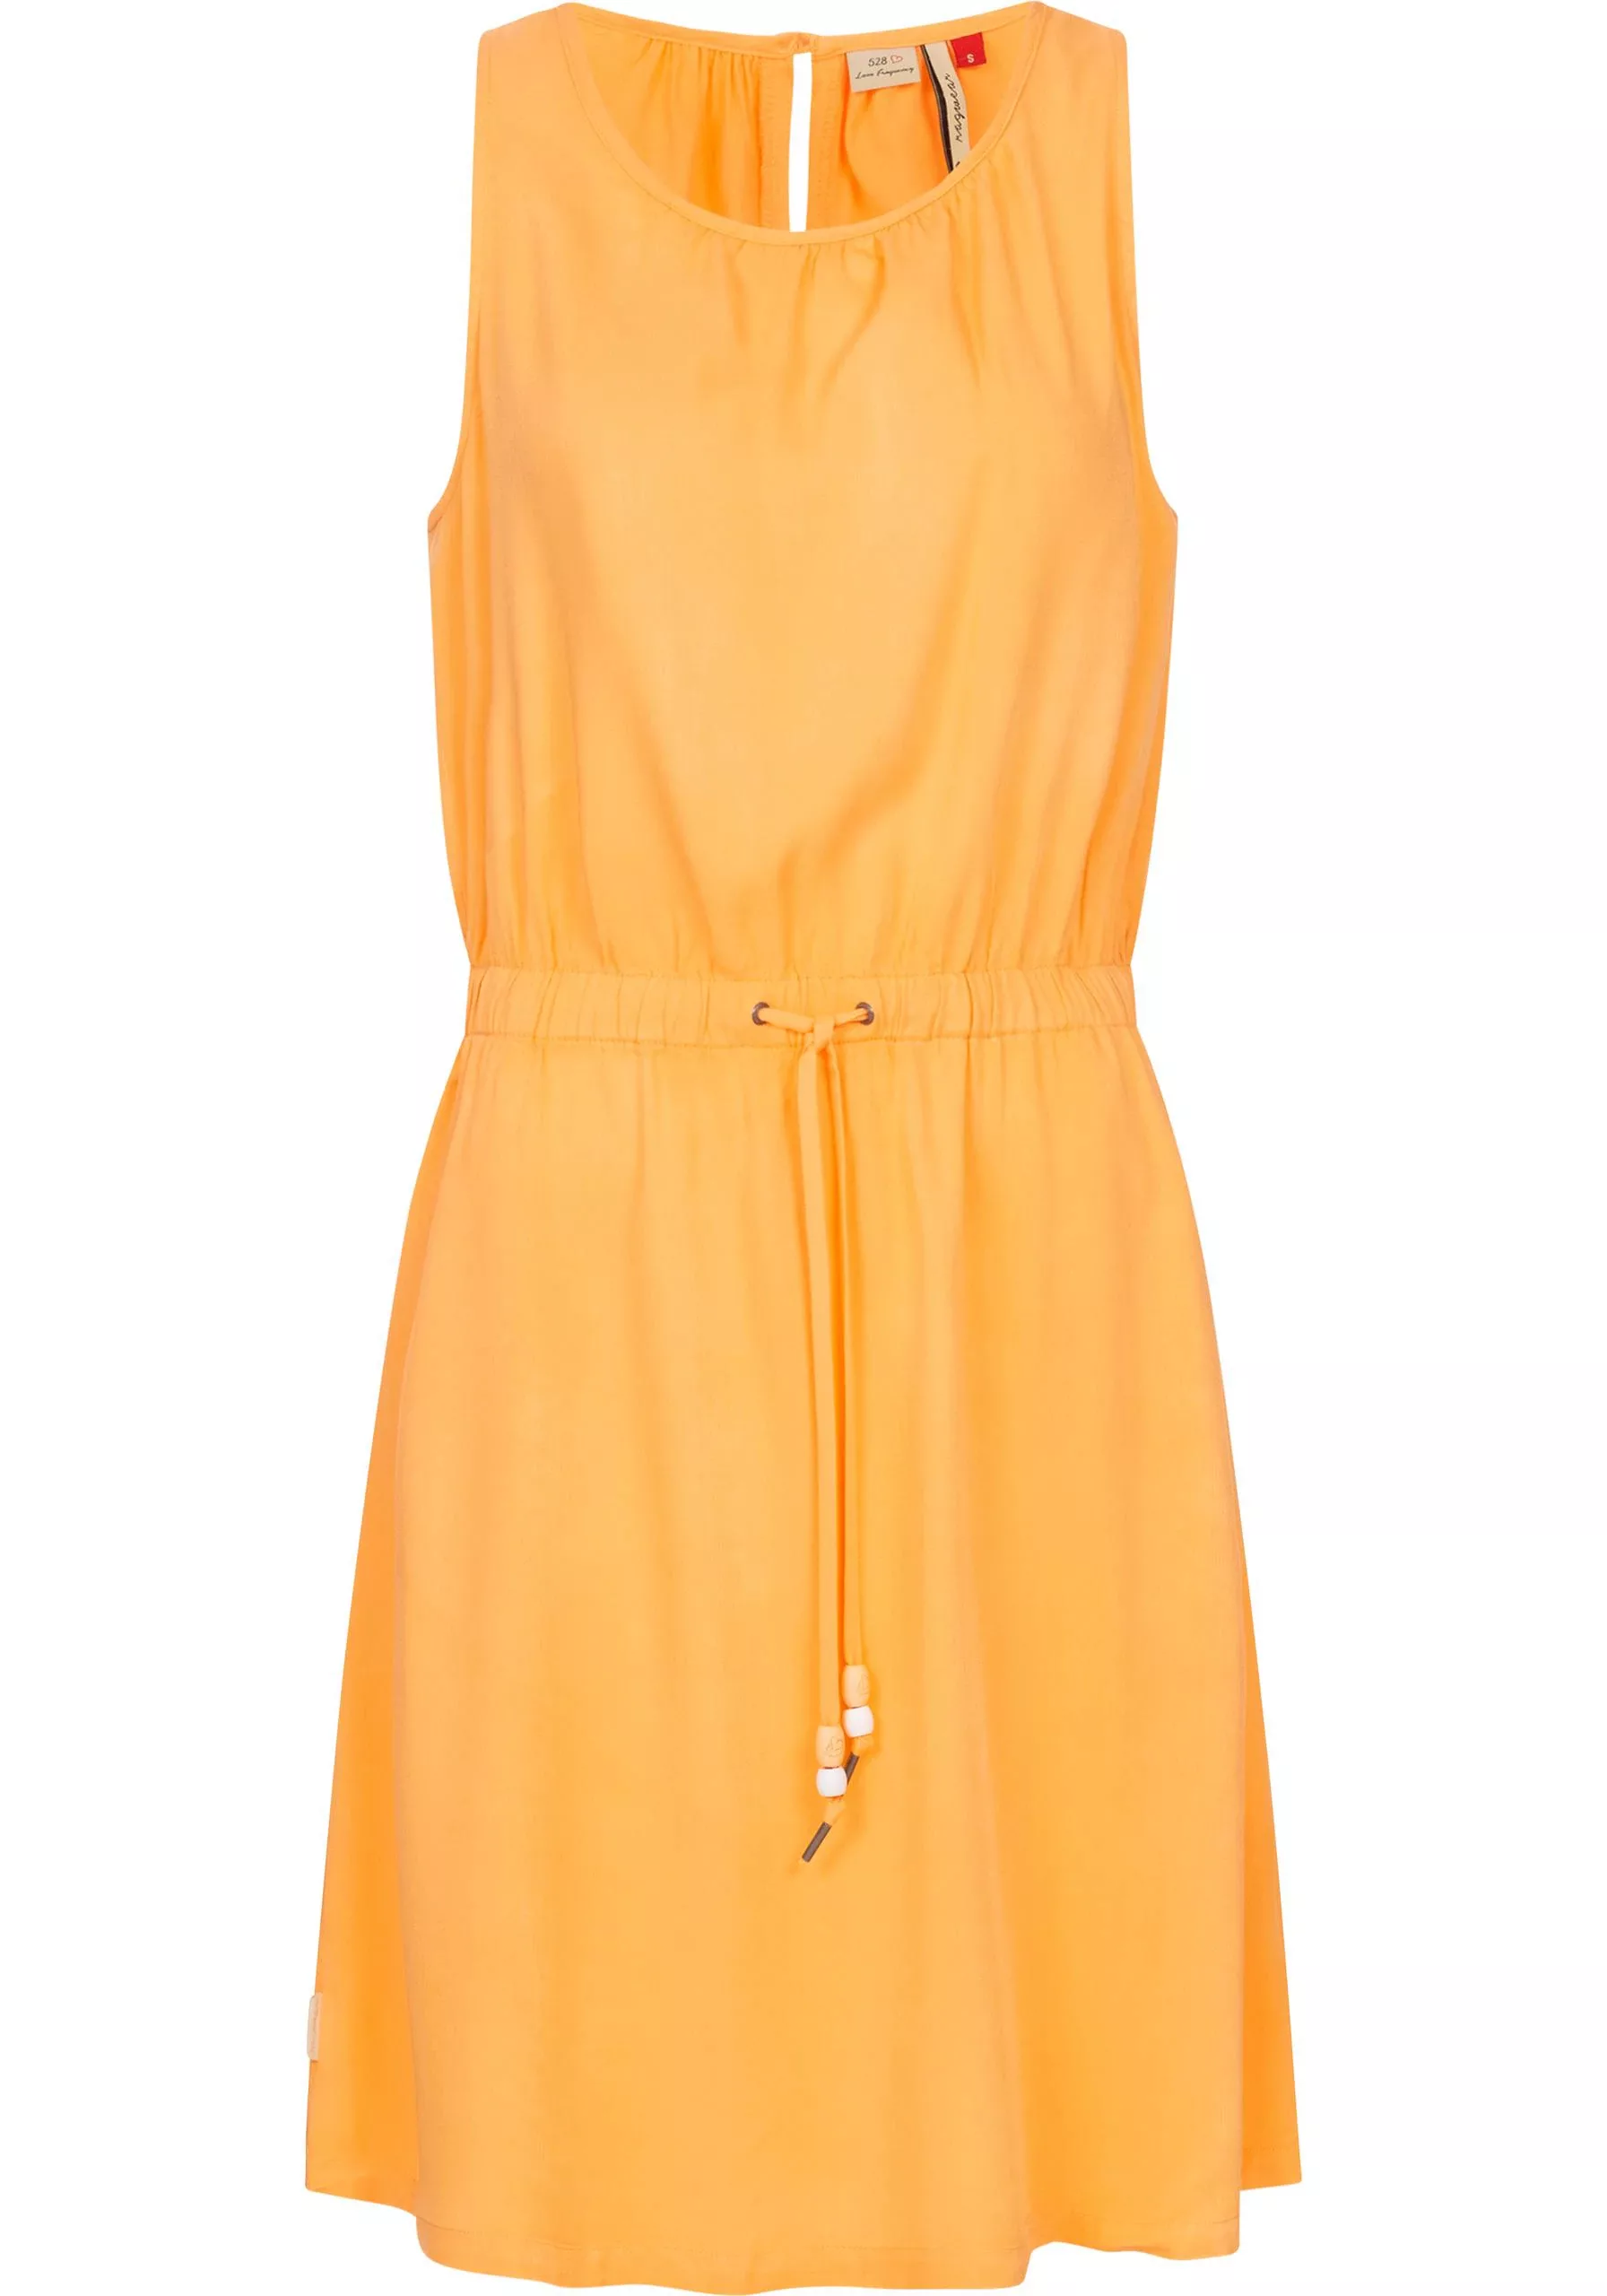 Ragwear Blusenkleid "Sanai", stylisches Sommerkleid mit verspielten Details günstig online kaufen